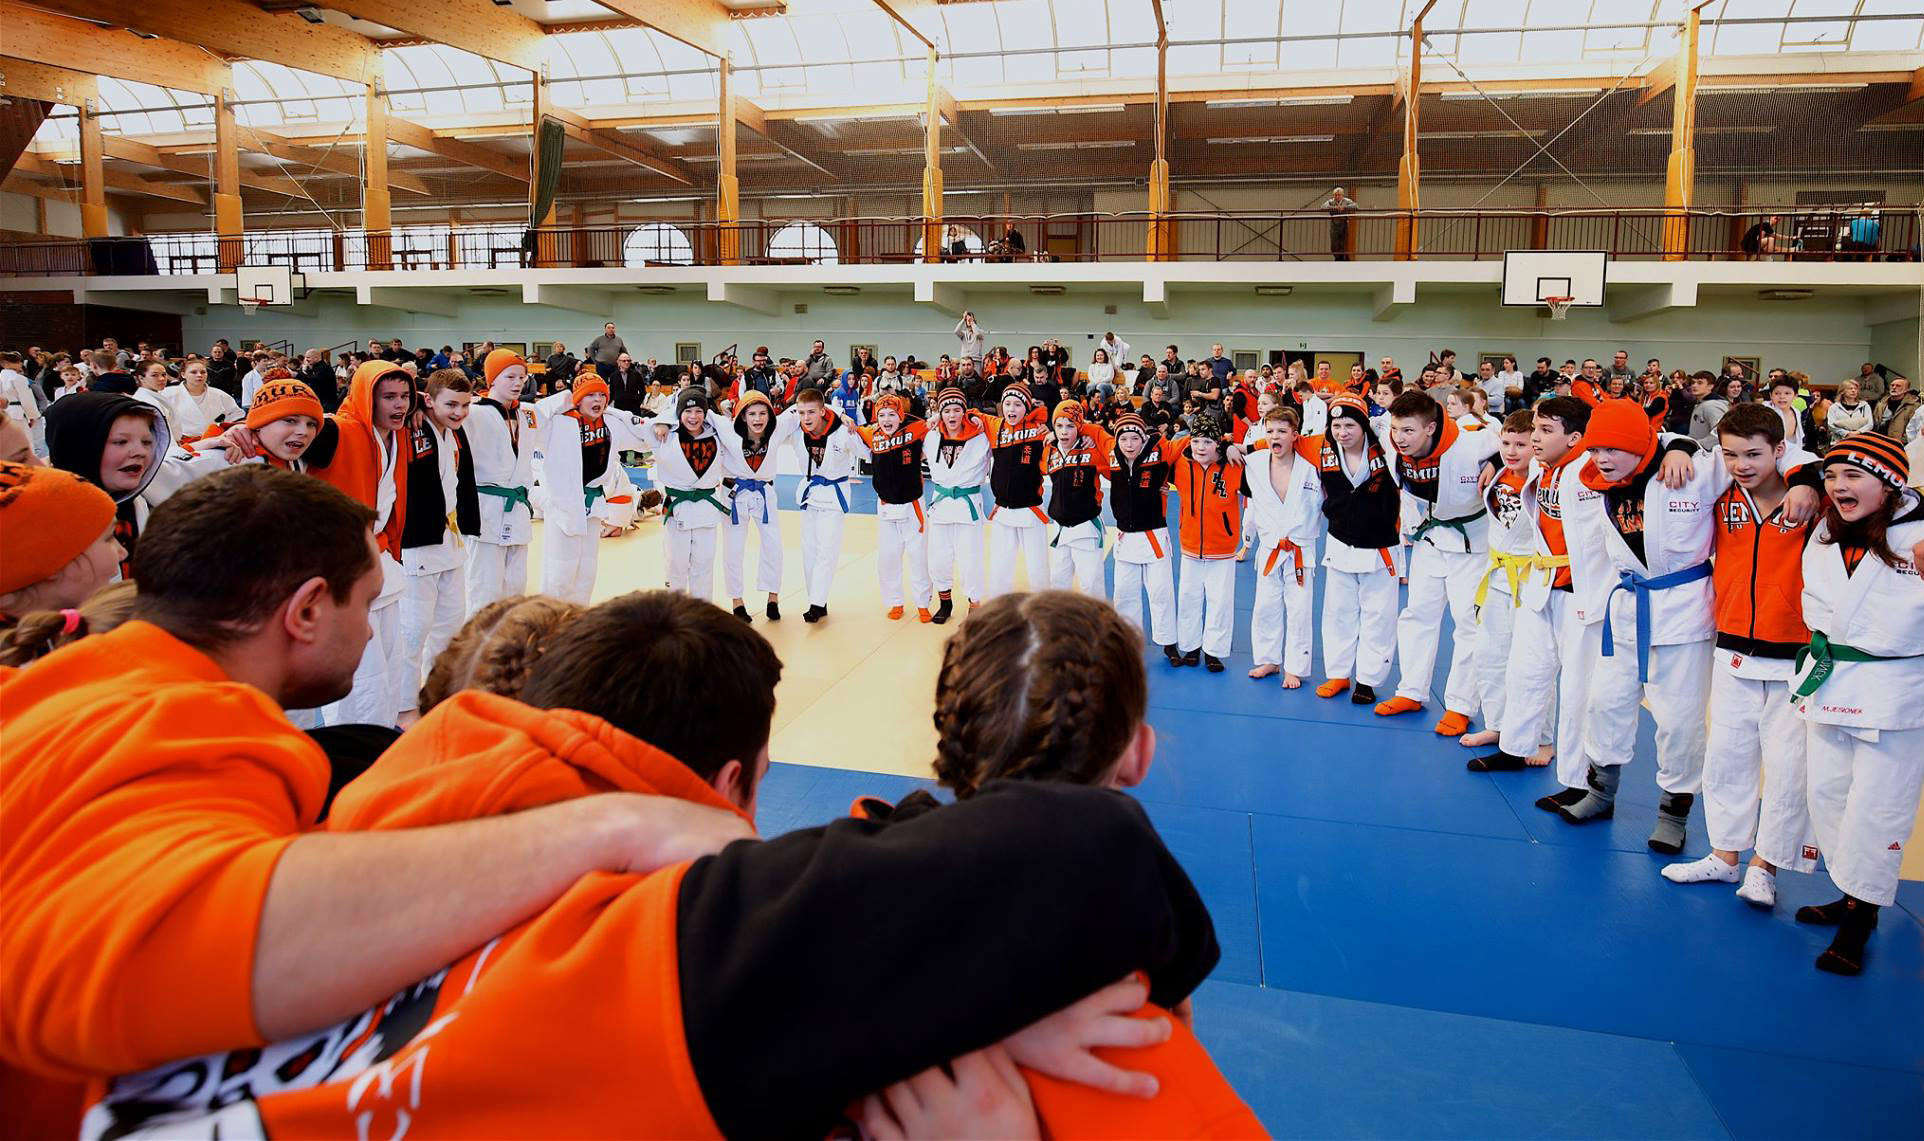 W Judo Lemur, nasz klub judo w Warszawie, każdy może odkryć w sobie prawdziwego lemura i spróbować swoich sił w judo. Jesteśmy pewni, że każdy sportowiec, który przyłączy się do naszej judo rodziny, będzie w stanie rozwinąć swoje umiejętności i odkryć pasję do tego sportu, tak jak my!